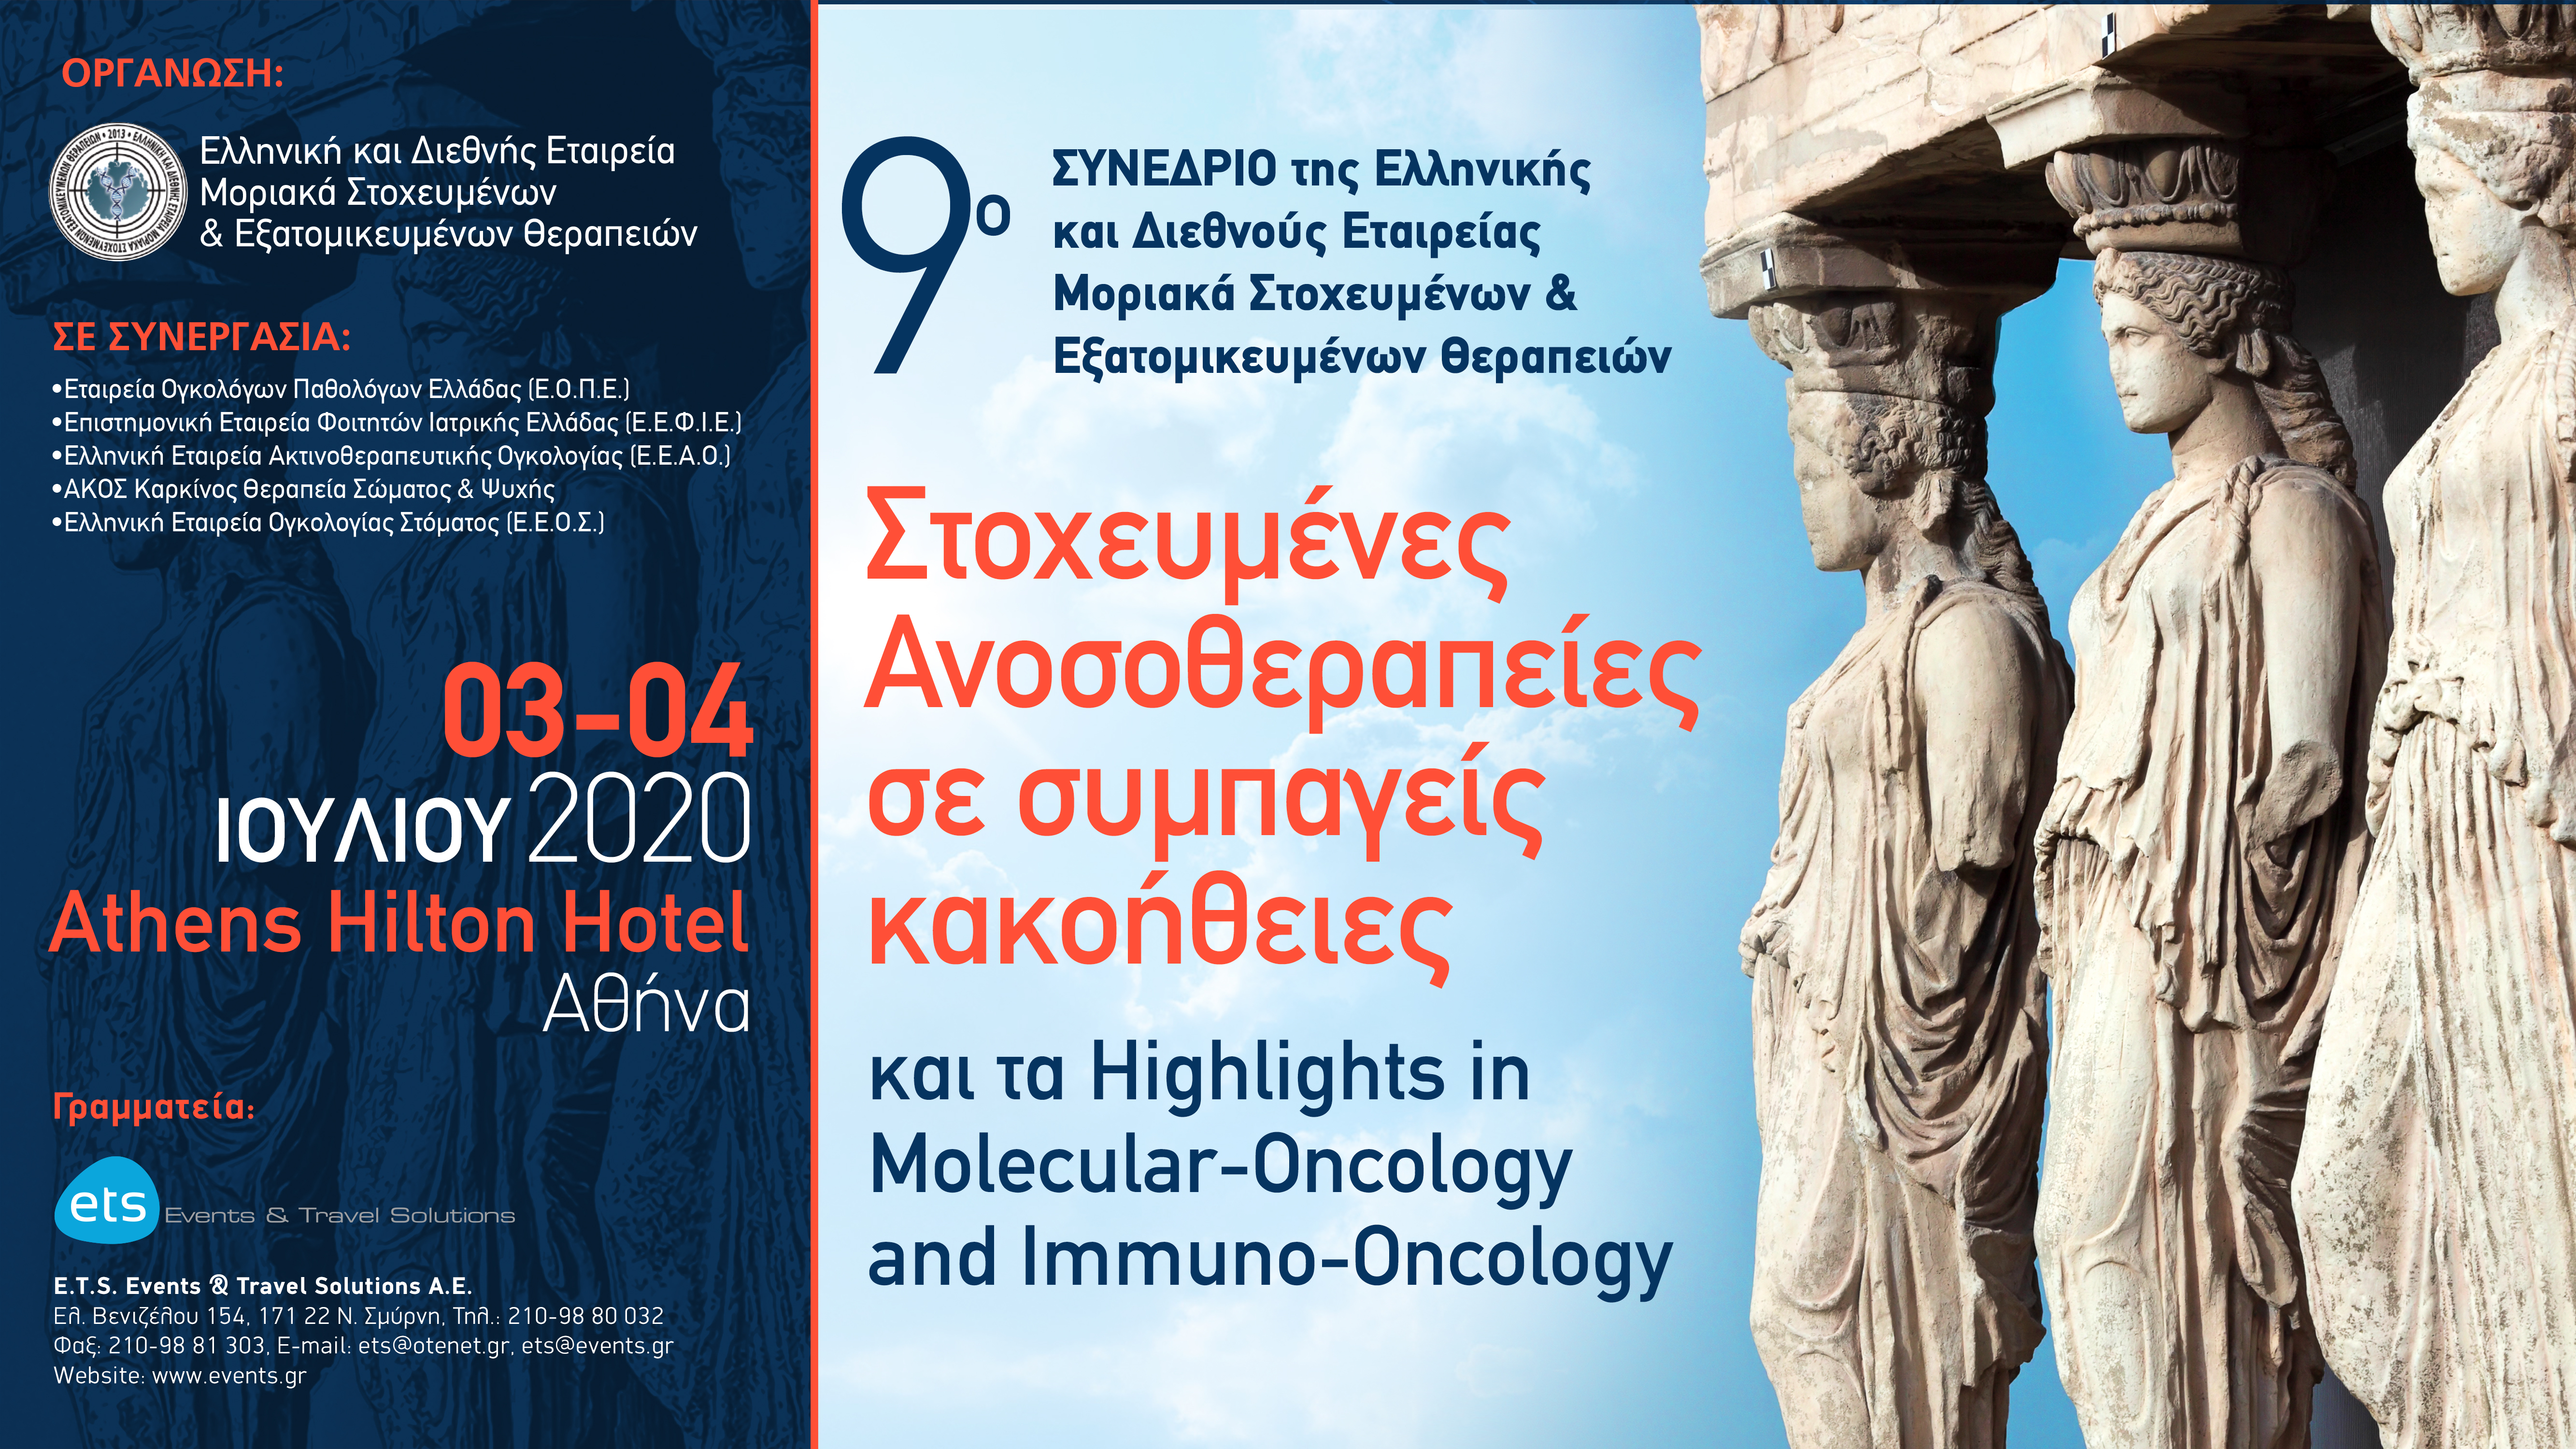 9ο Συνέδριο της Ελληνικής και Διεθνούς Εταιρείας Μοριακά Στοχευμένων & Εξατομικευμένων Θεραπειών με θέμα: Στοχευμένες Ανοσοθεραπείες σε συμπαγείς κακοήθειες και τα Ηighlights in Molecular-Oncology and Immuno-Oncology.